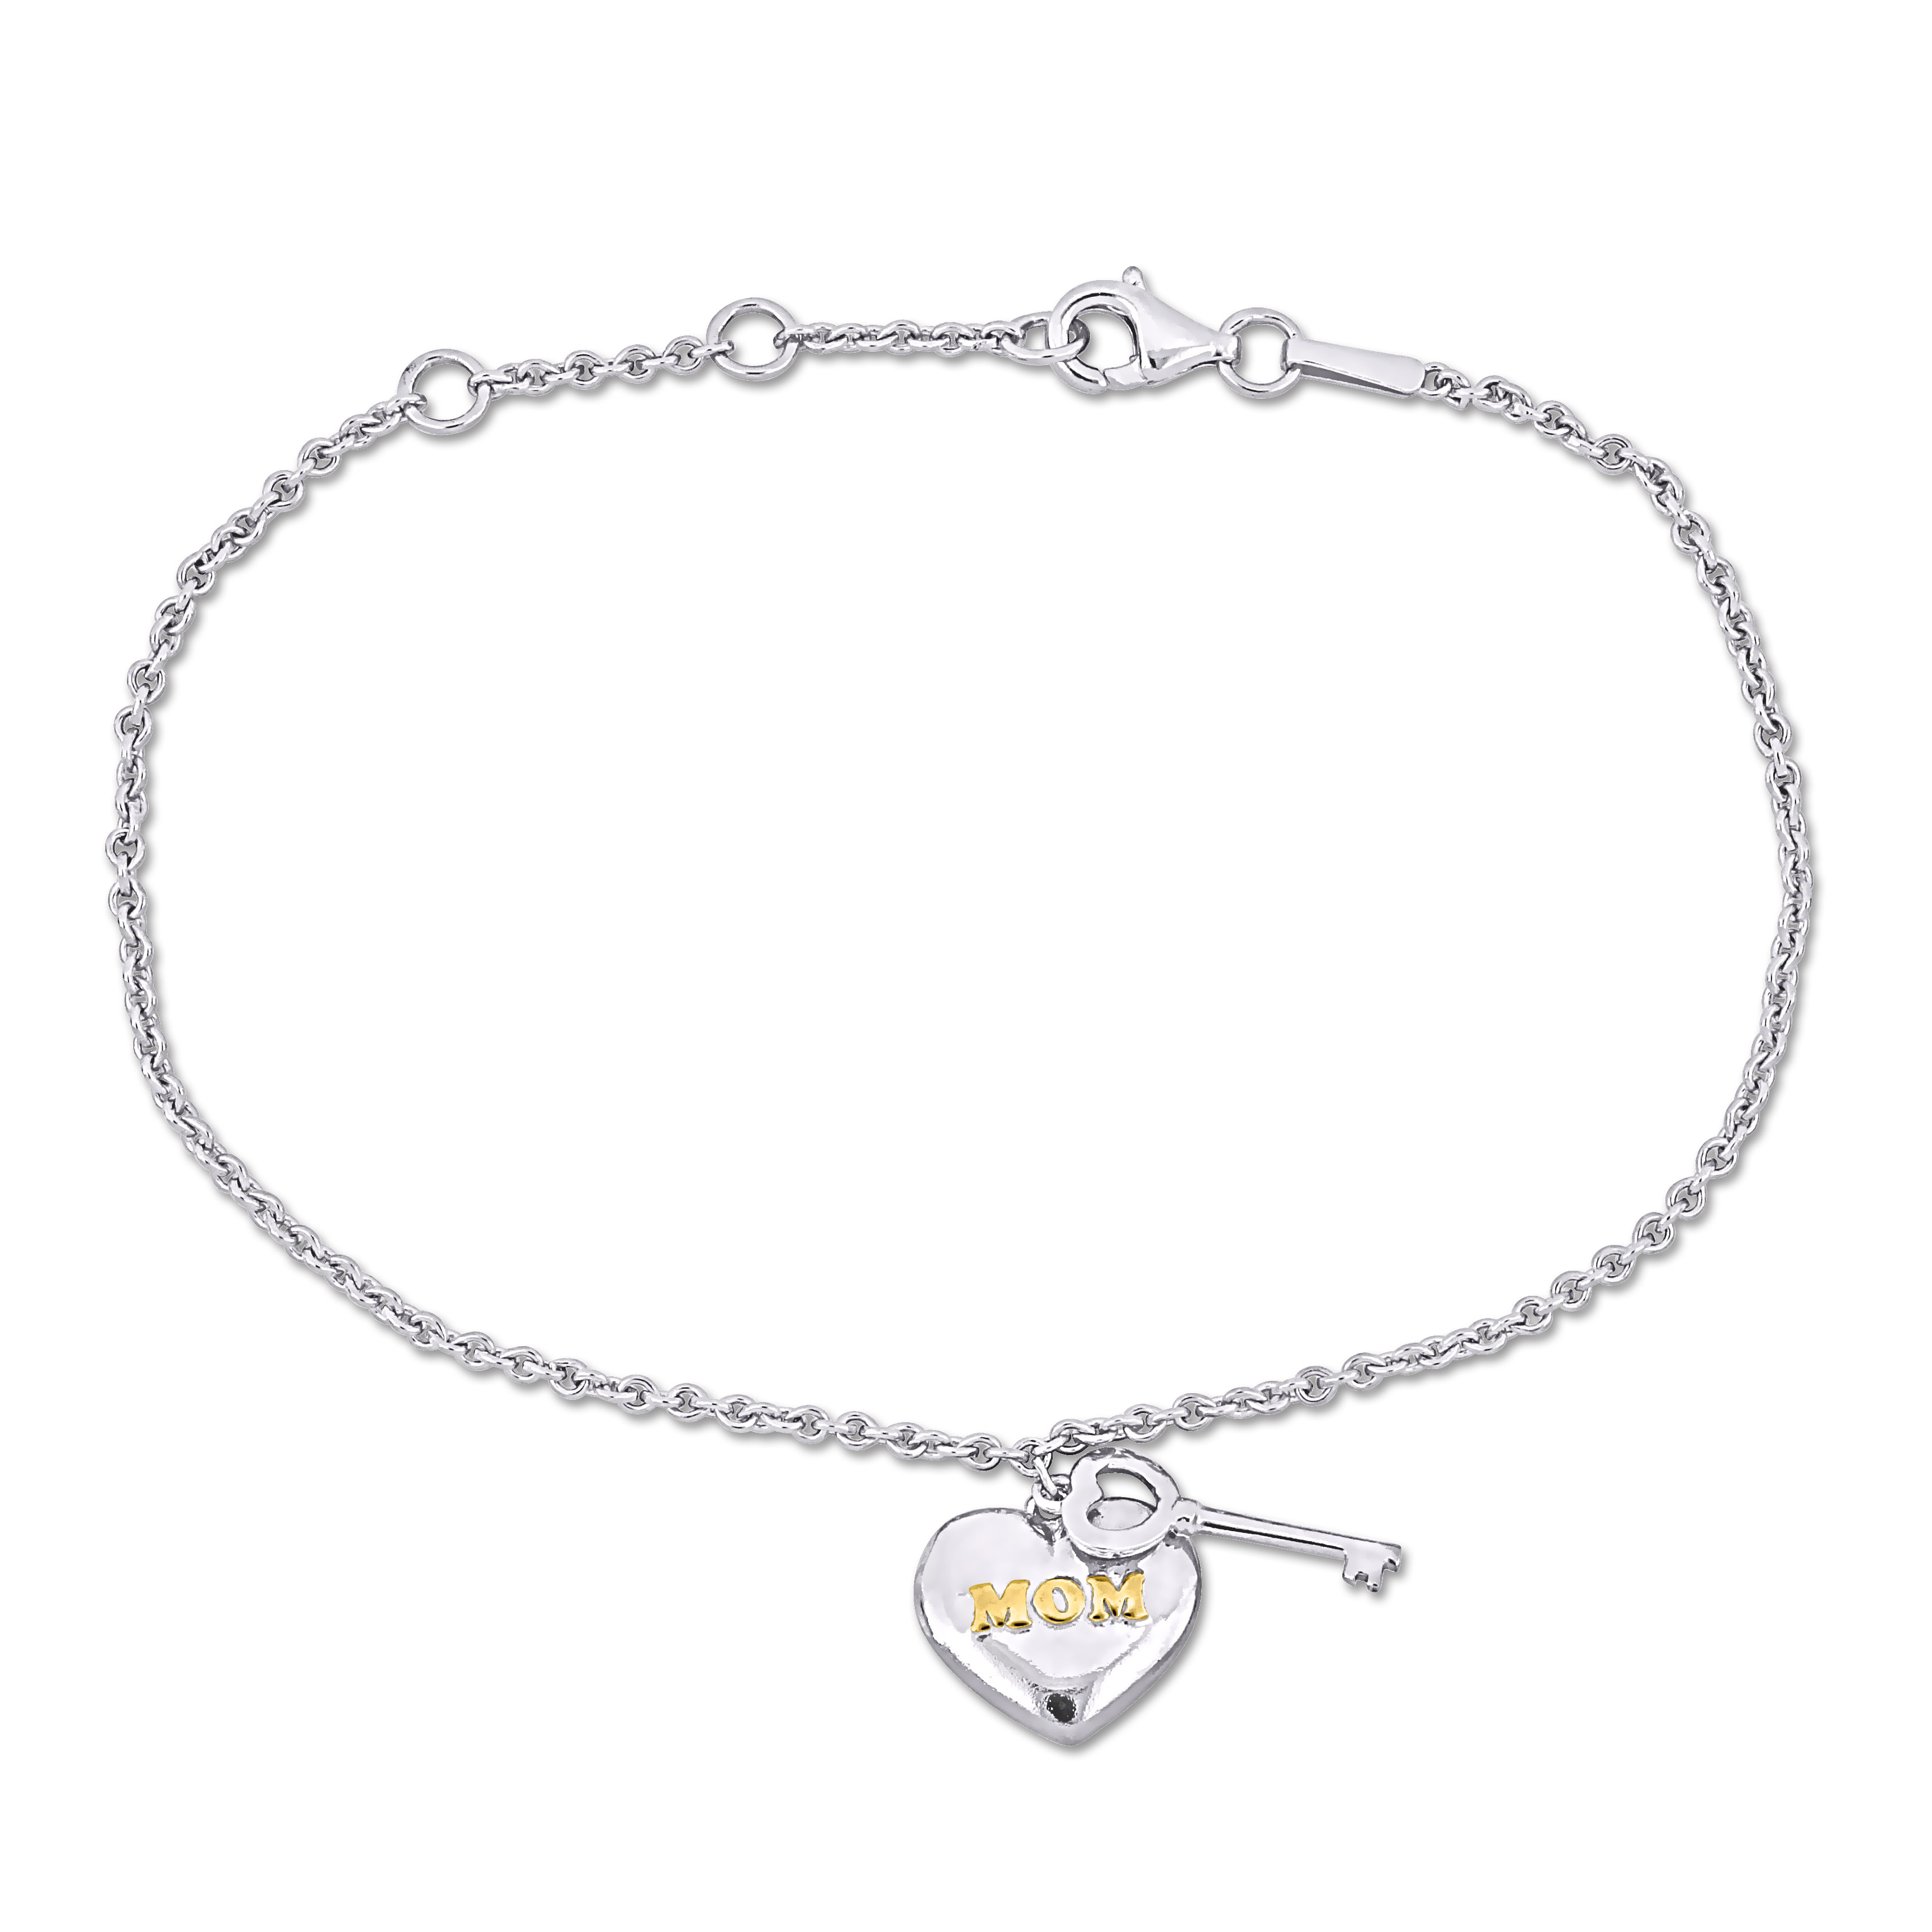 MOM Heart & Key Charm 7 Bracelet in Sterling Silver